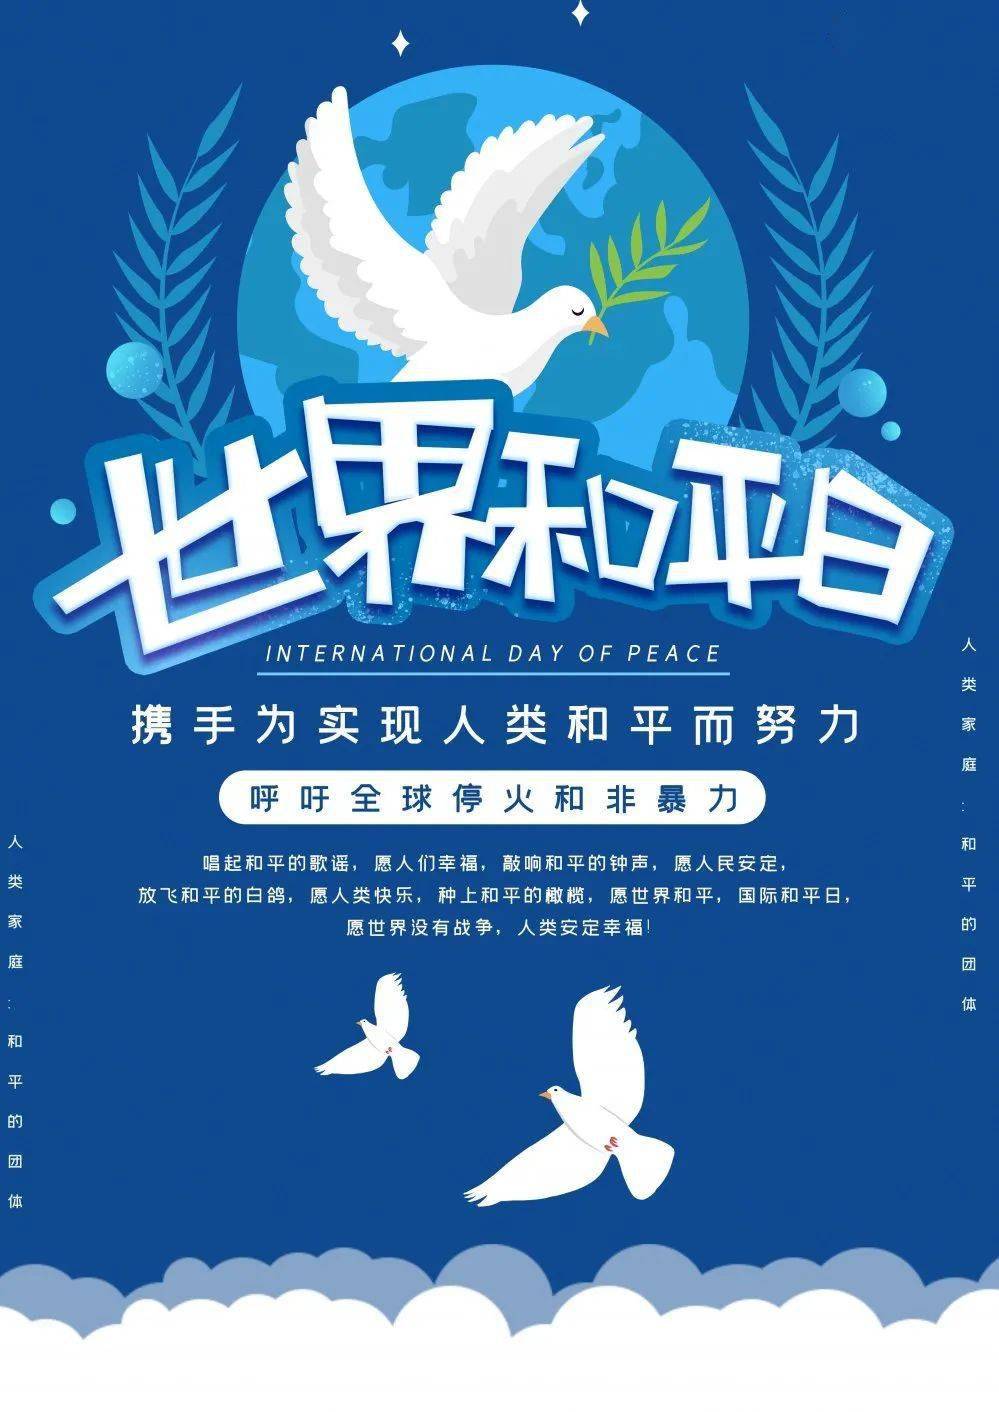 央美节日 国际和平日:铭记历史,珍爱和平_手机搜狐网